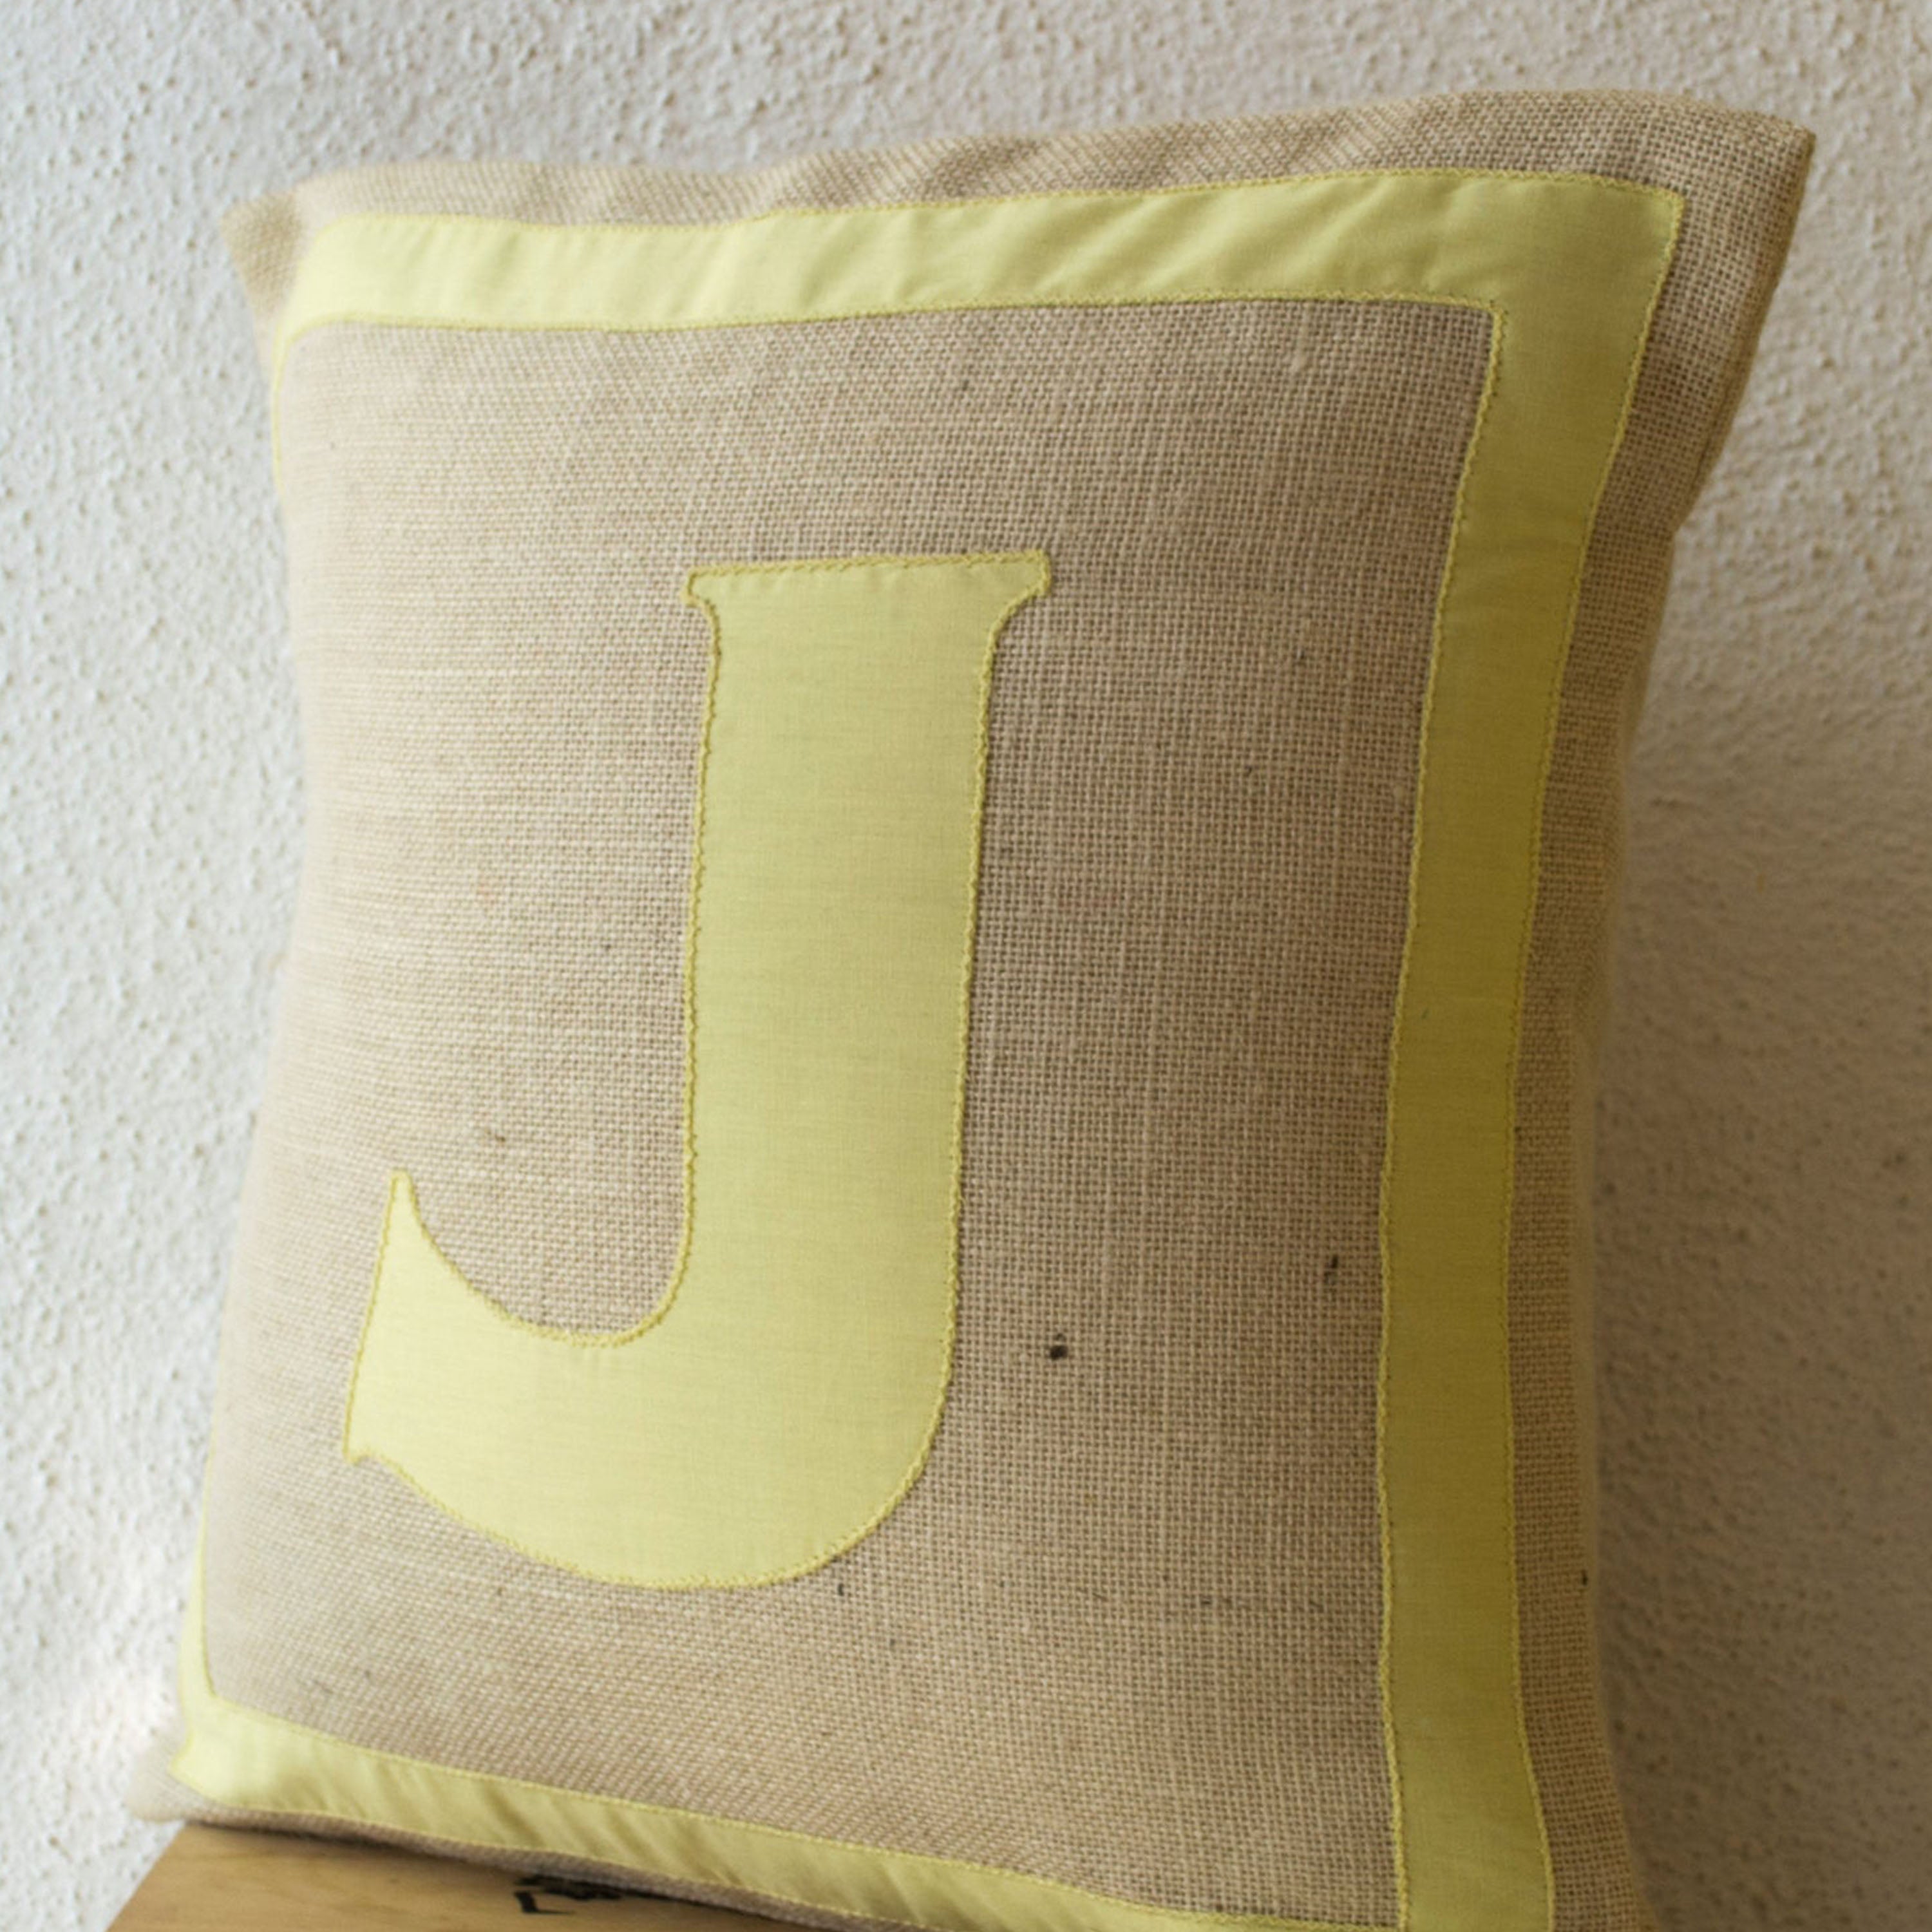 Personalized Monogram throw pillow- Burlap pillows- Yellow cotton monogram cushion - cotton applique - Decorative throw pillow- 16x16 pillow